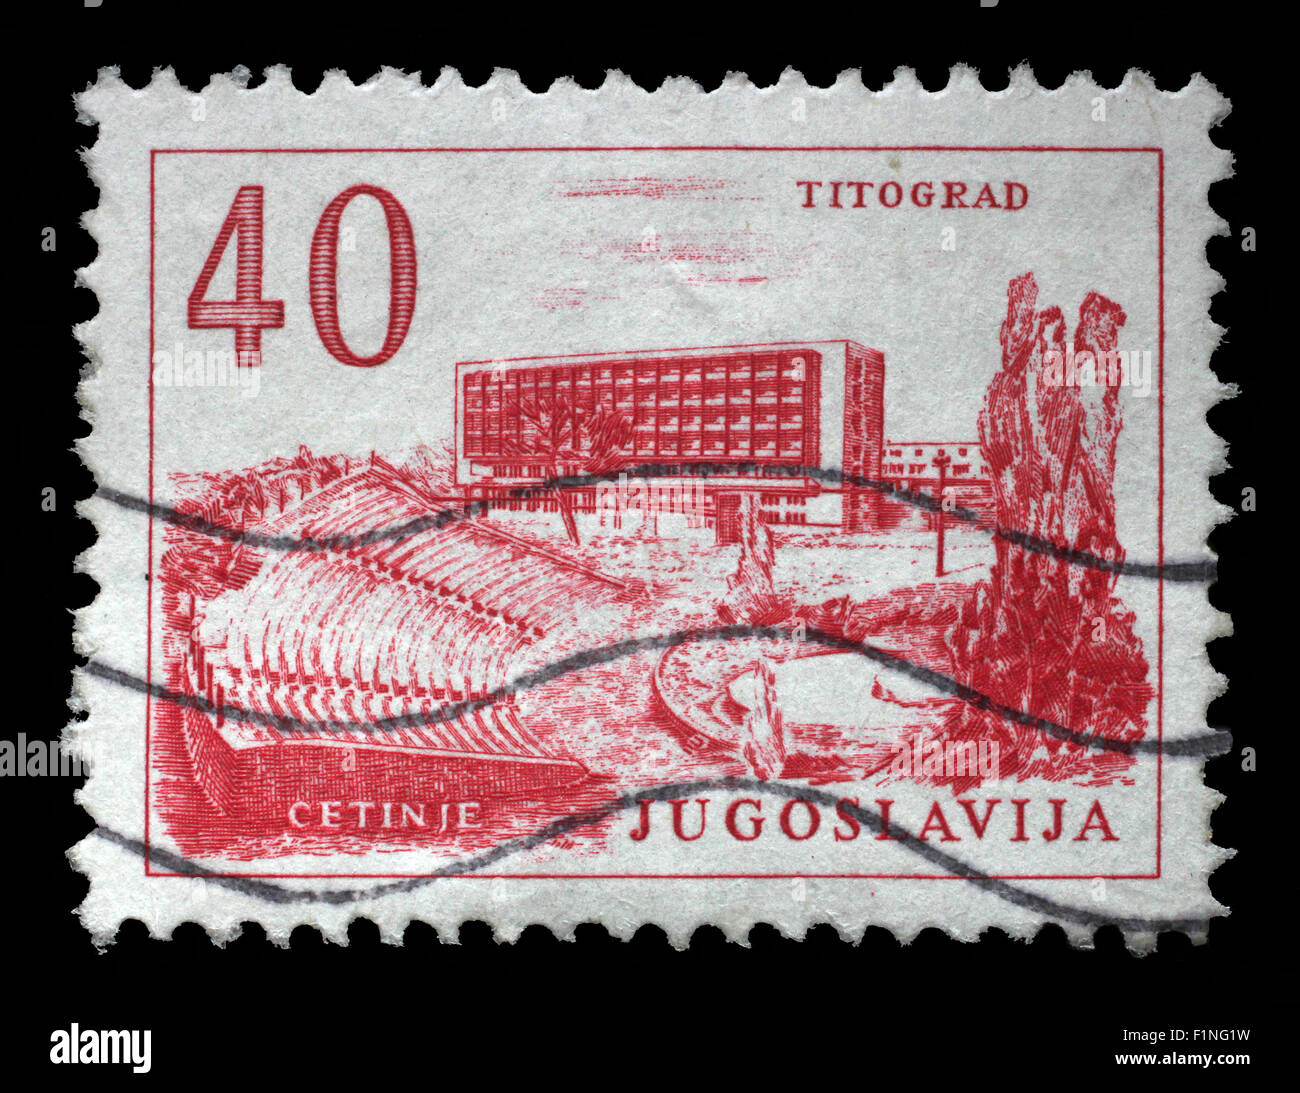 Briefmarke gedruckt in Jugoslawien, zeigt Titograd (Podgorica) Hotel und Open-Air-Theater in Cetinje, ca. 1958 Stockfoto